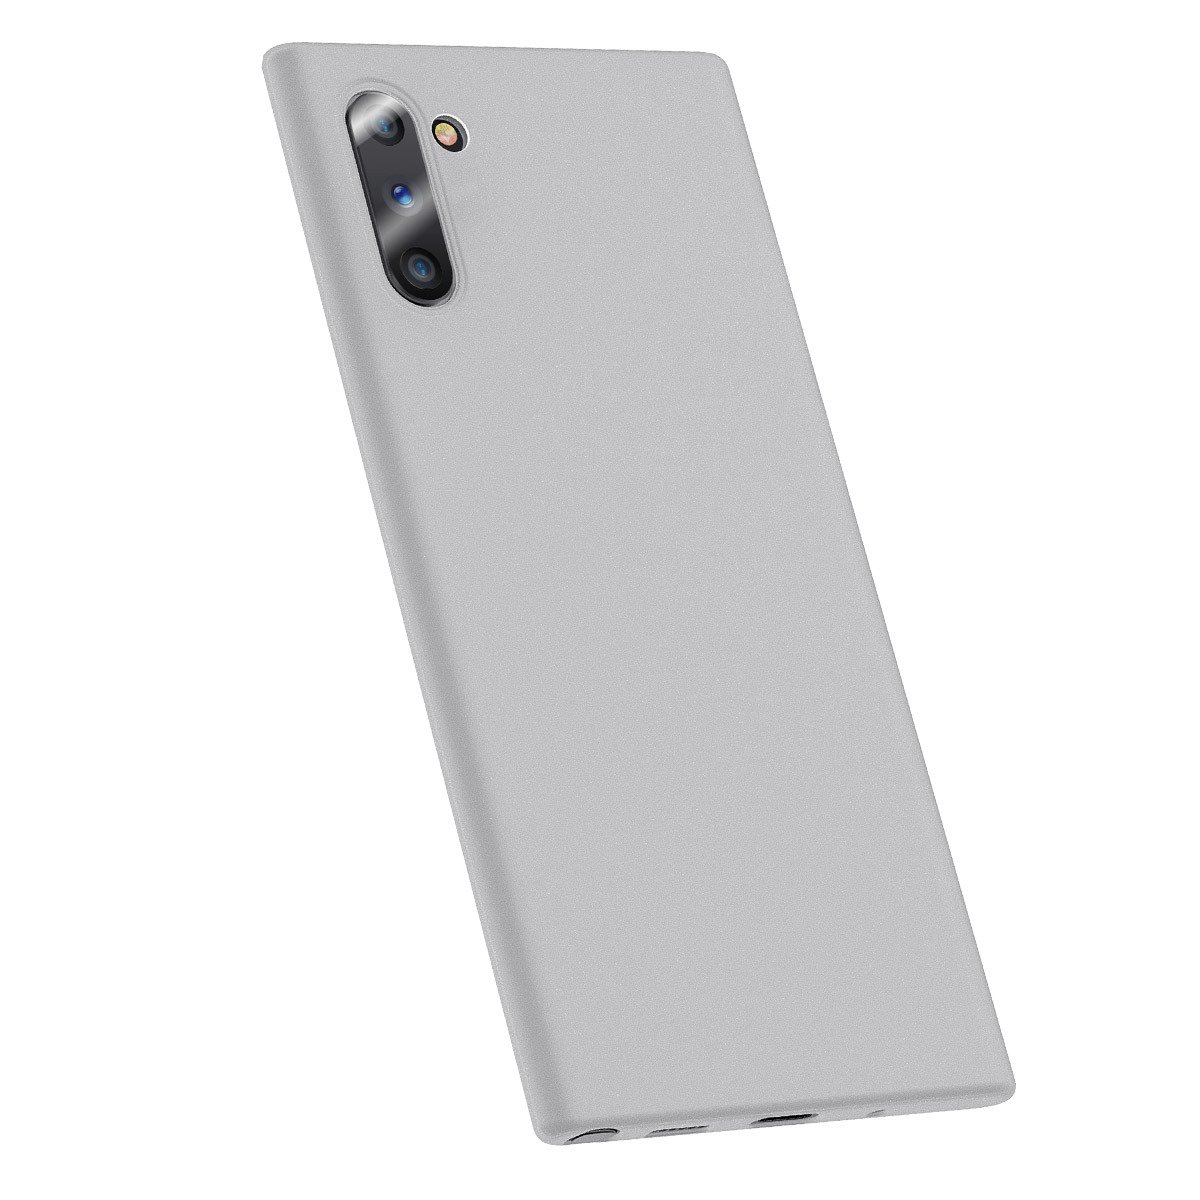 Husa Samsung Galaxy Note 10, Baseus Wing Case, Alb, 6.3 inch BASEUS imagine noua idaho.ro